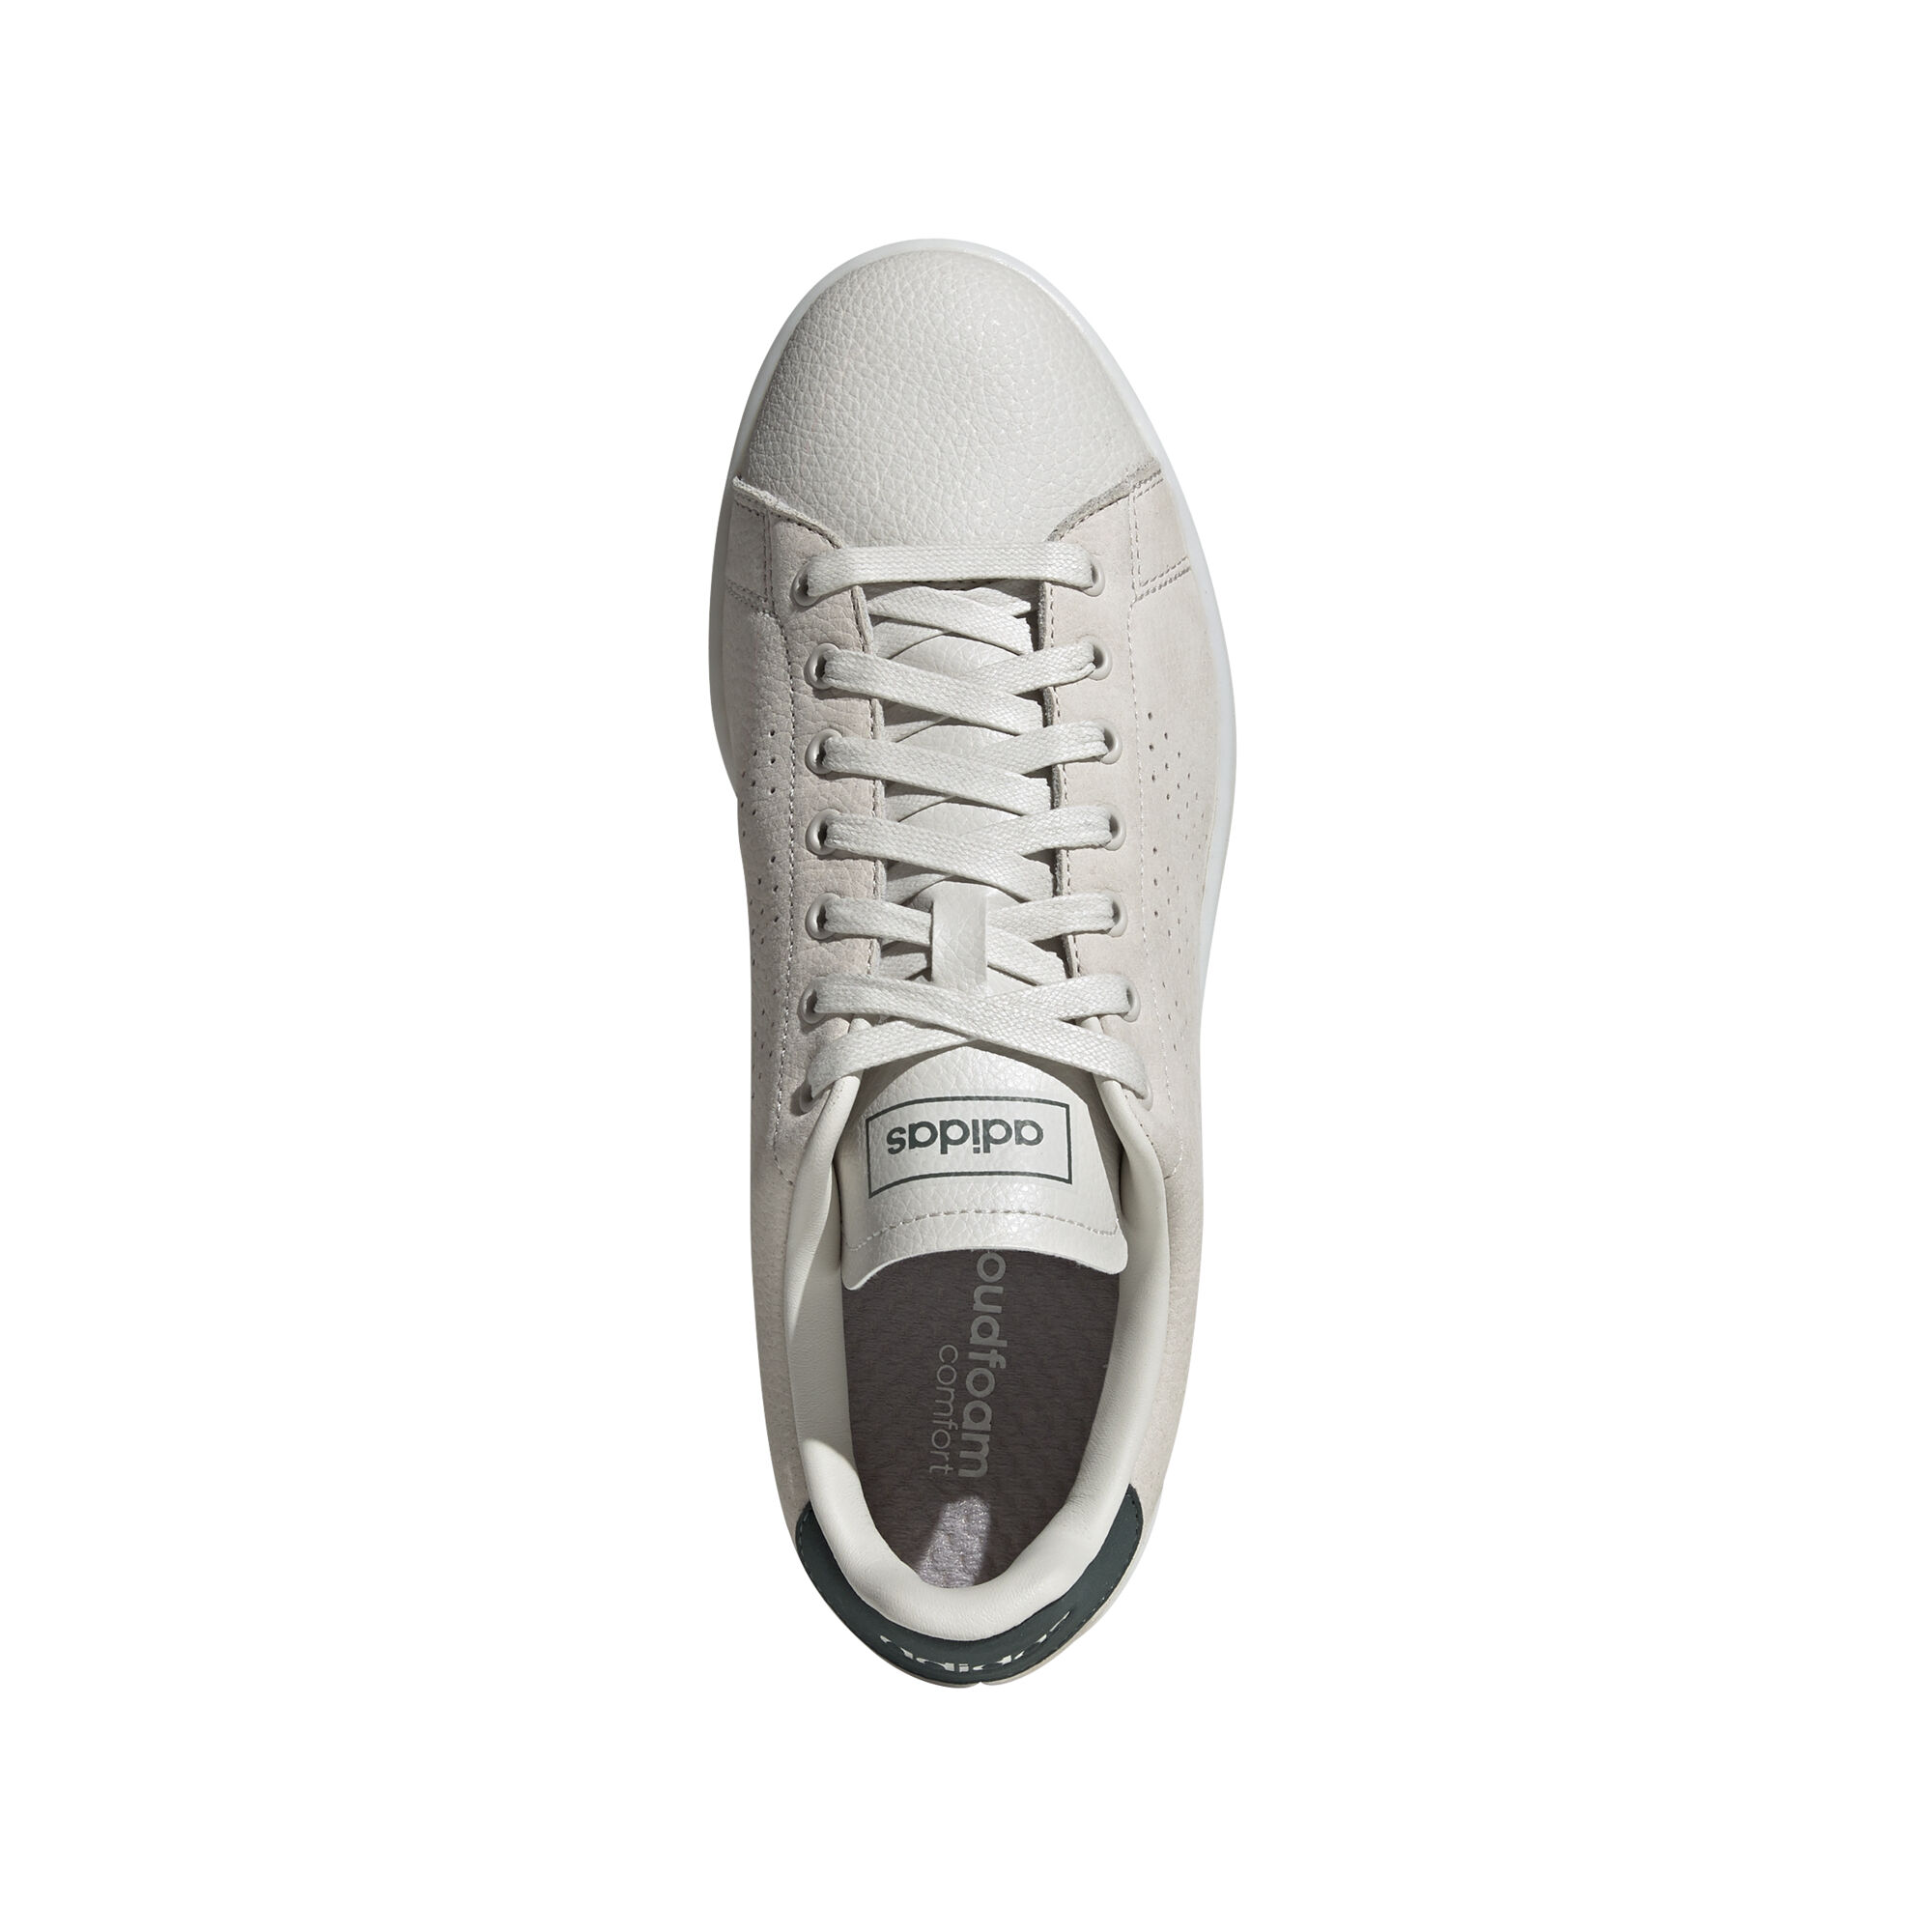 Adidas Advantage Sneaker Shoes Online - Men's |Shoe City